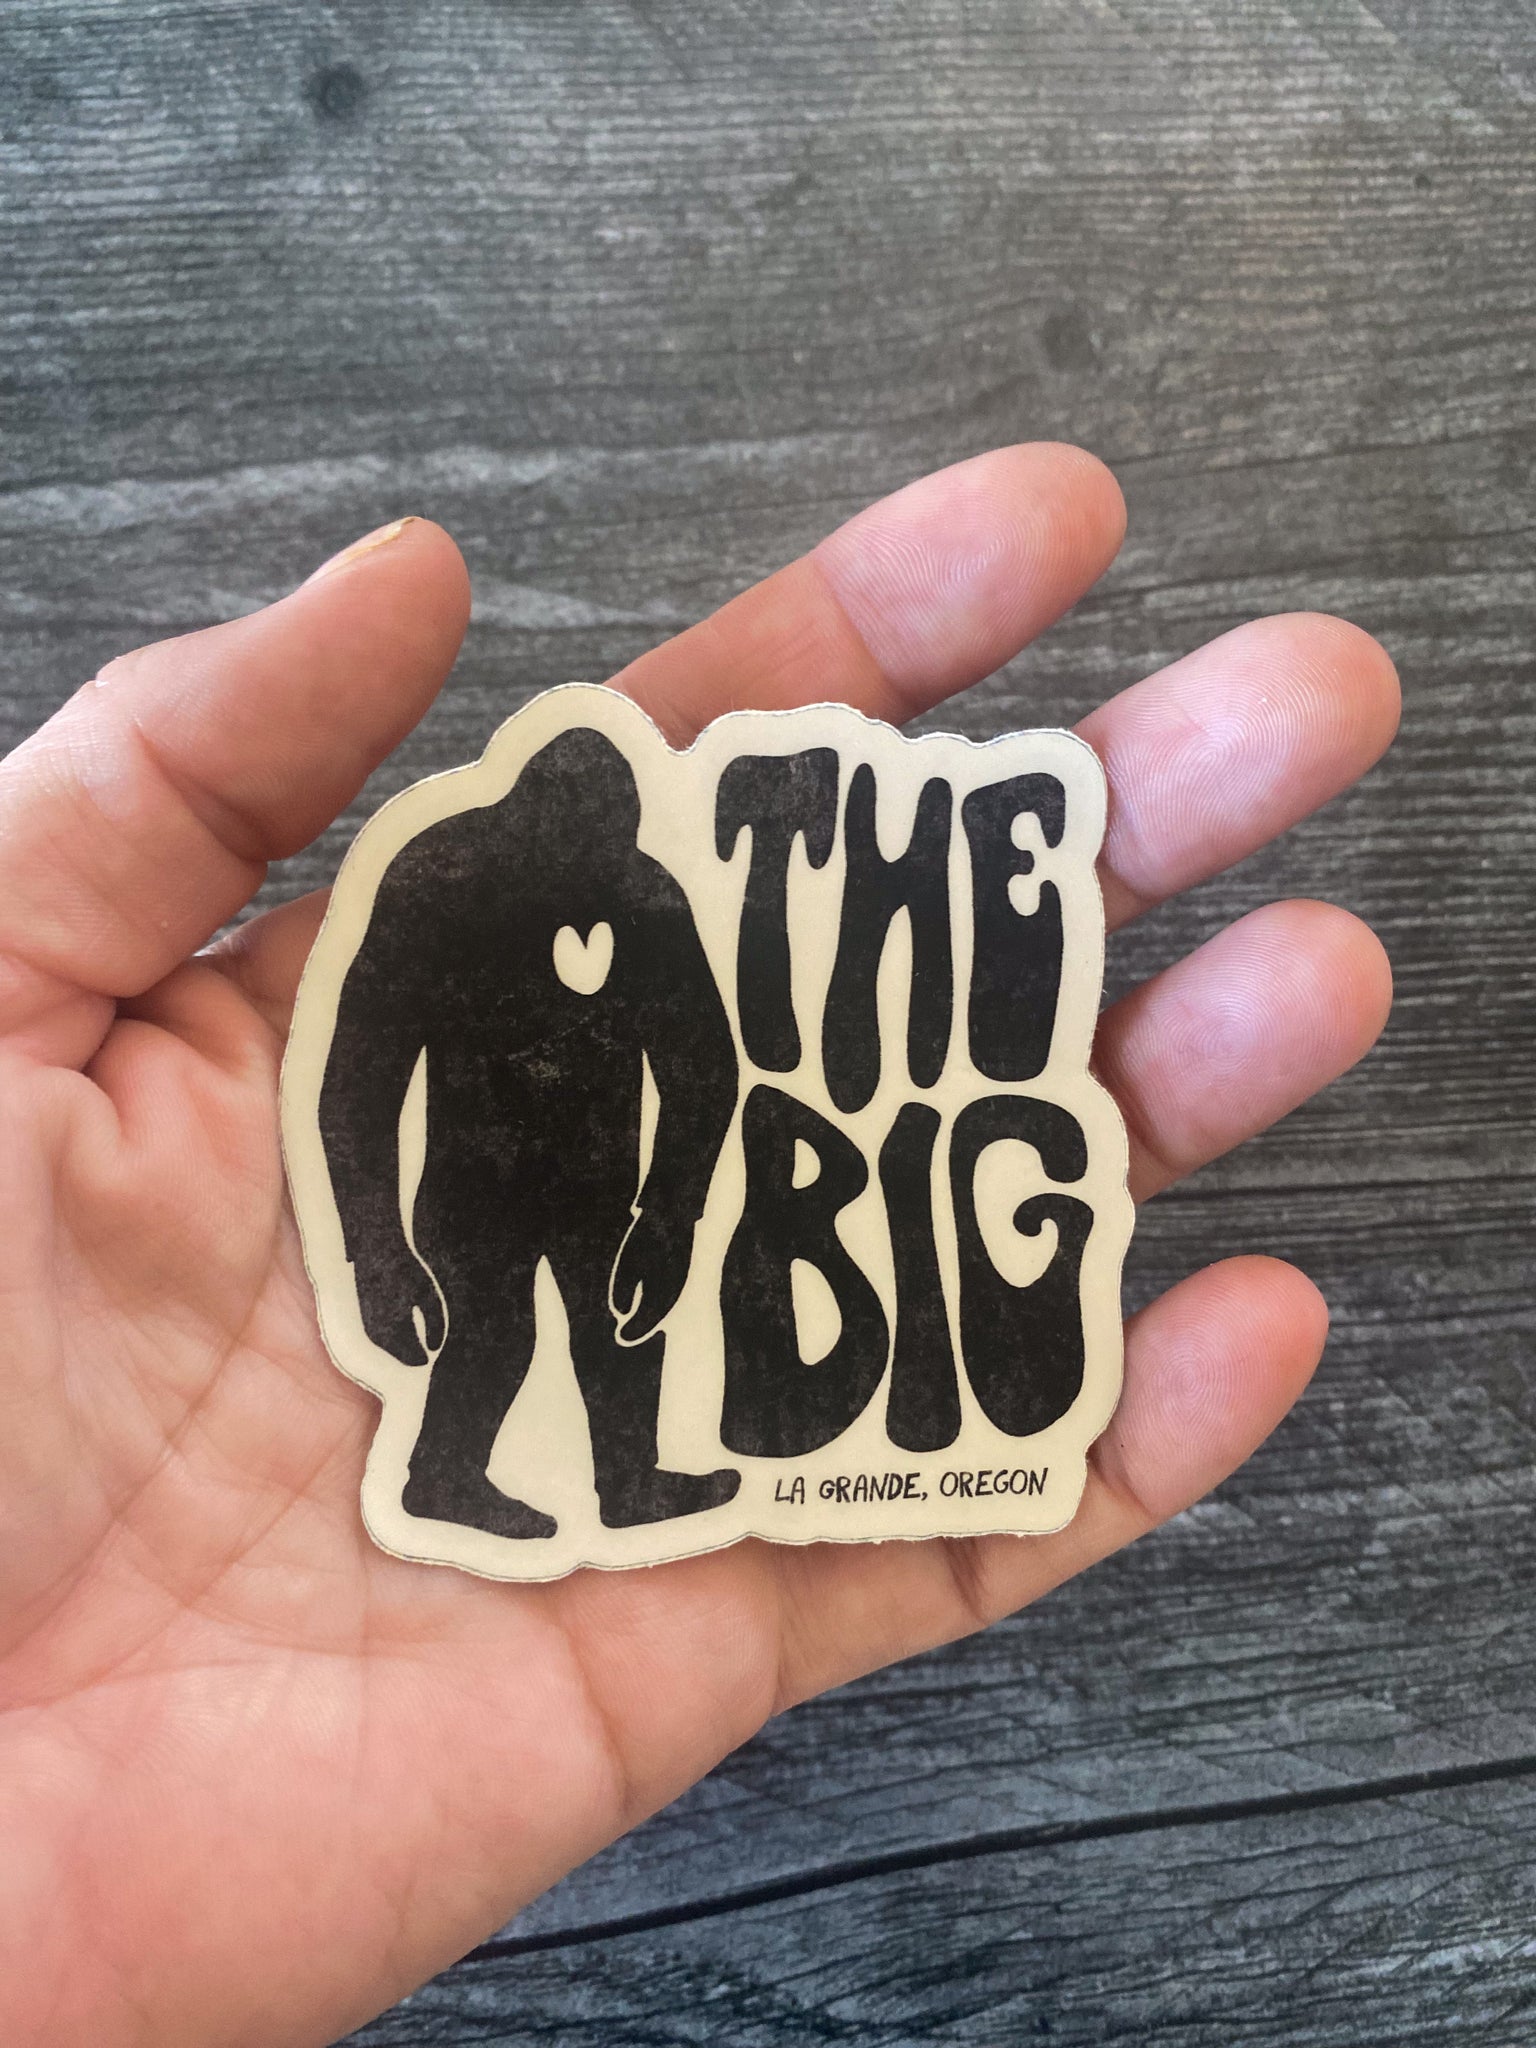 The Big La Grande Sticker